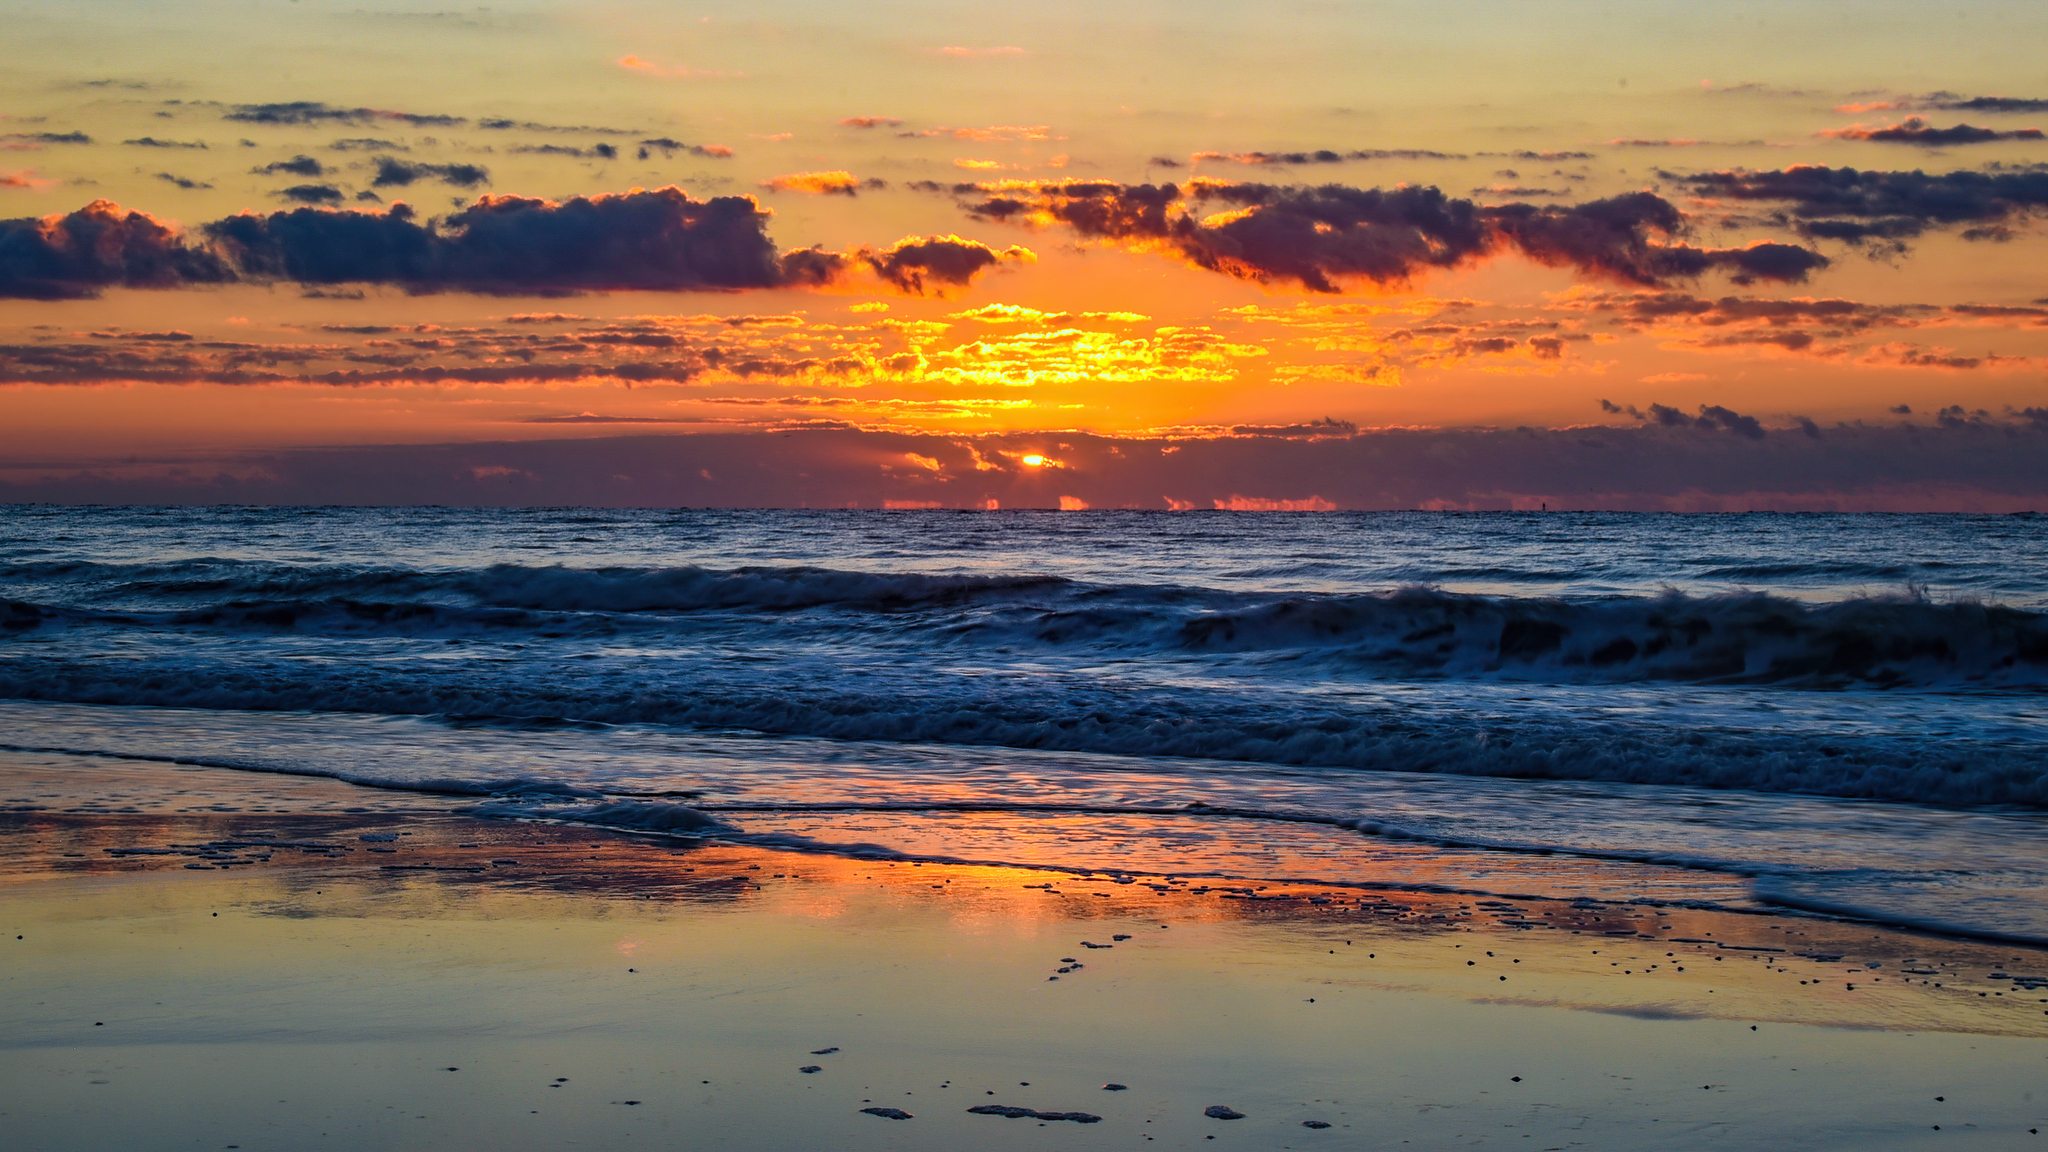 sunrise-at-huntington-beach-state-park-5k-01.jpg. 